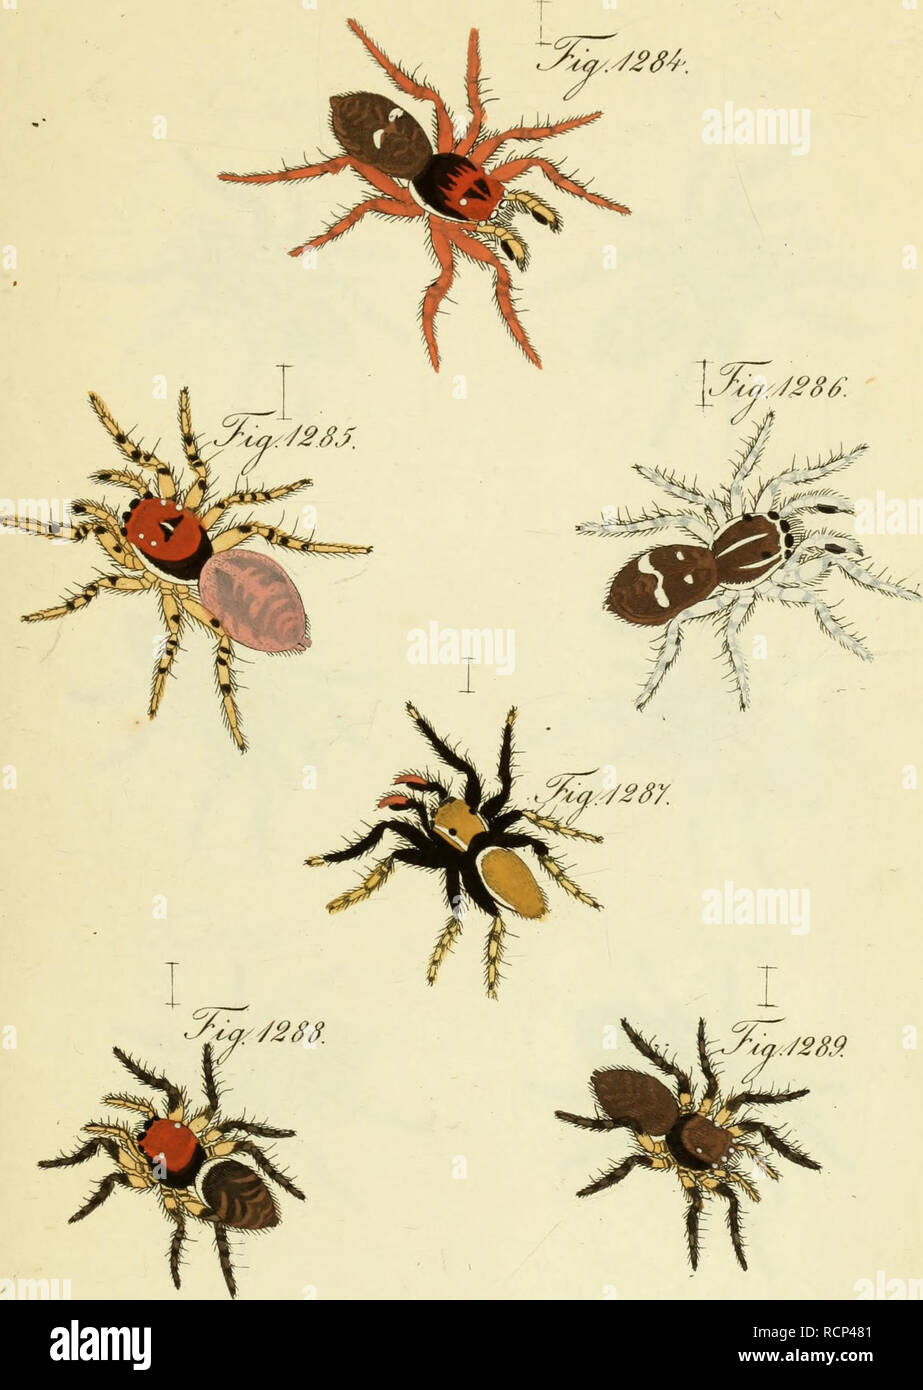 Die Arachniden : Getreu nach der Natur abgebildet und beschrieben.  Arachnida. .%rA ccccx^na V.J2S4-. 3ZJ£86:. ÄptäSt. S°^^Myj Javier L m^. ,  %^S5.^Aem. %ys£tö 3. ruuw« „«?. r.. Please note that these